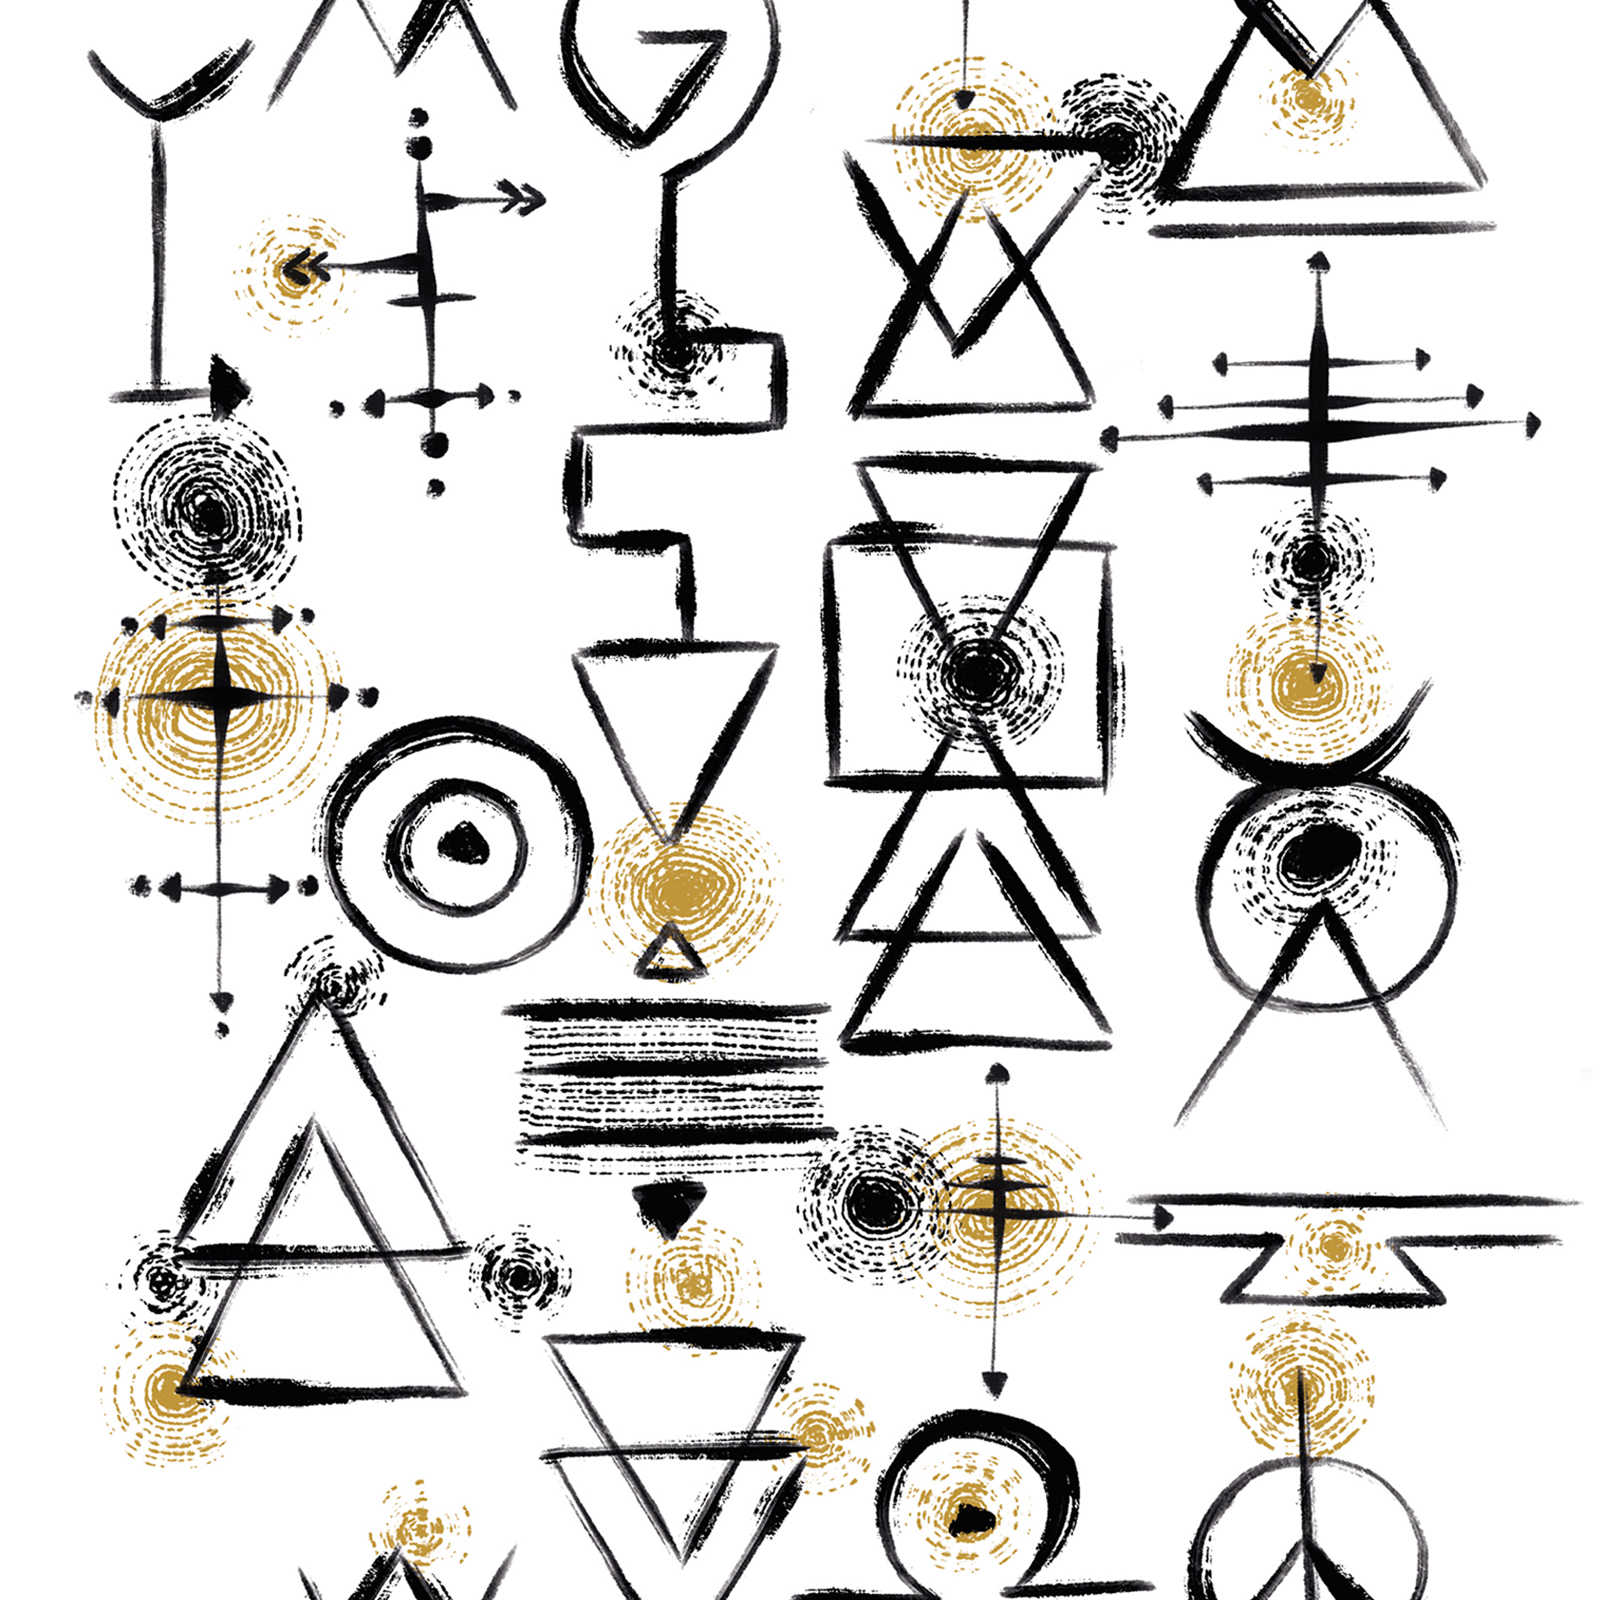 Onderlaag behang met abstracte symbolen op een lichte achtergrond - wit, zwart, goud
